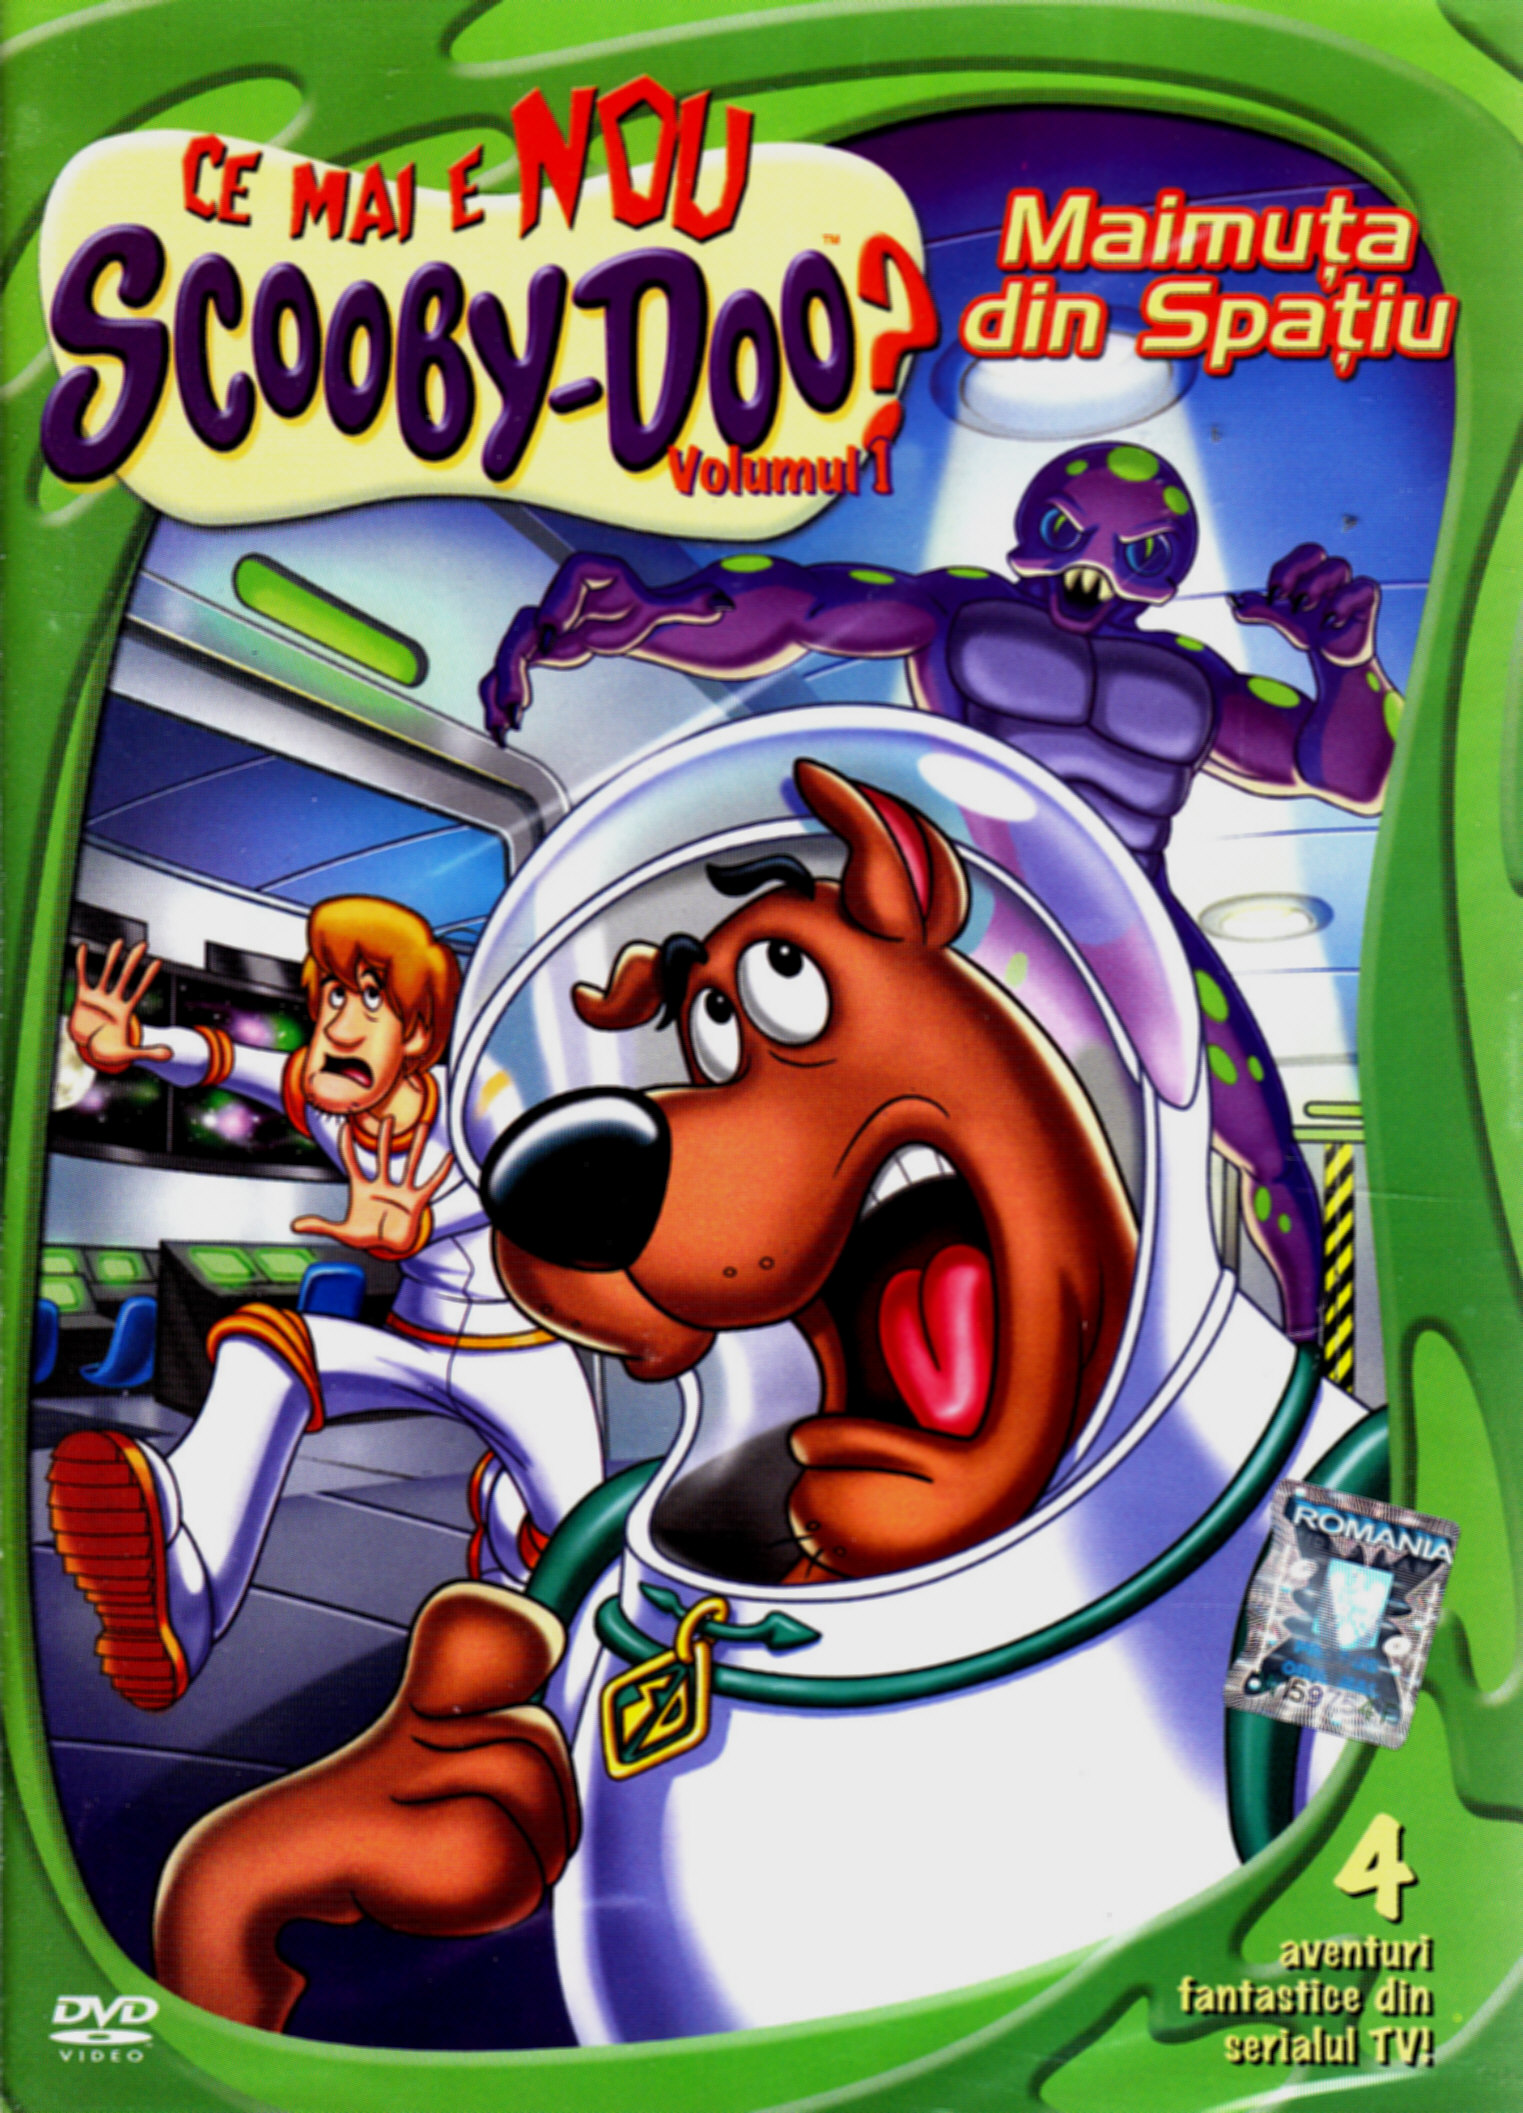 DVD Scooby-Doo volumul 1 - Maimuta din Spatiu